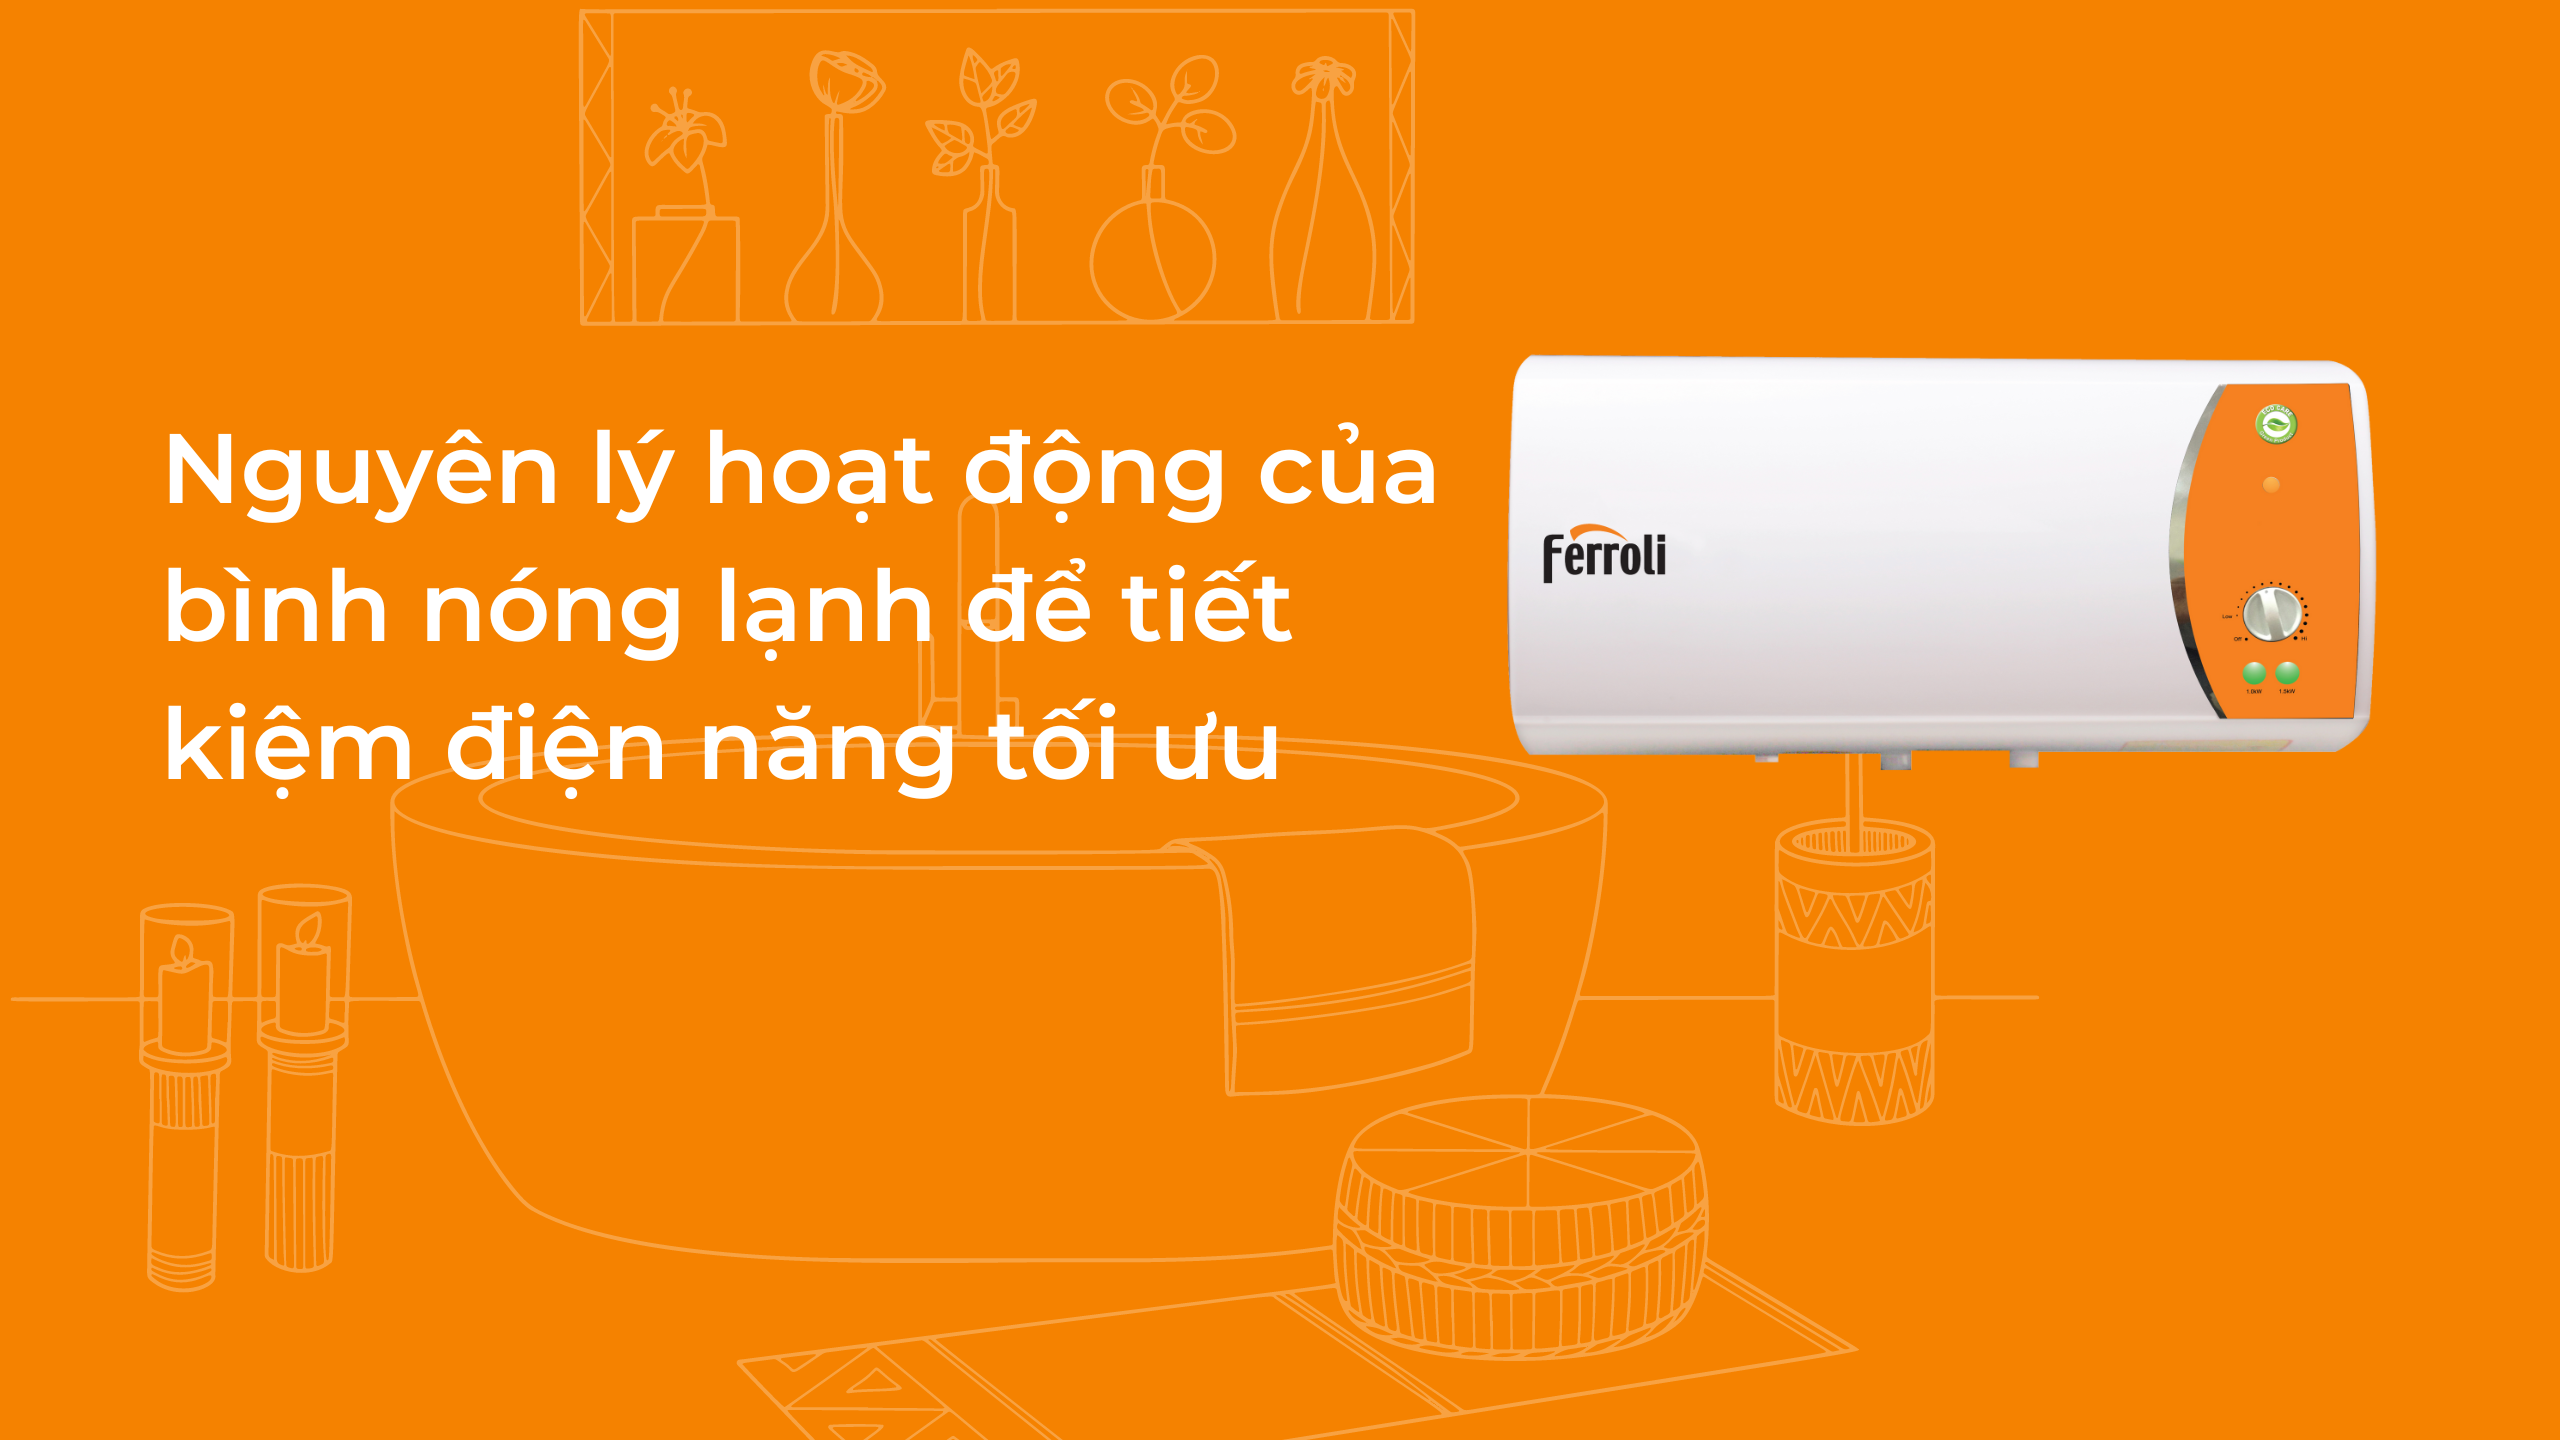 (Tiếng Việt) Nguyên lý hoạt động của bình nóng lạnh để tiết kiệm điện năng tối ưu